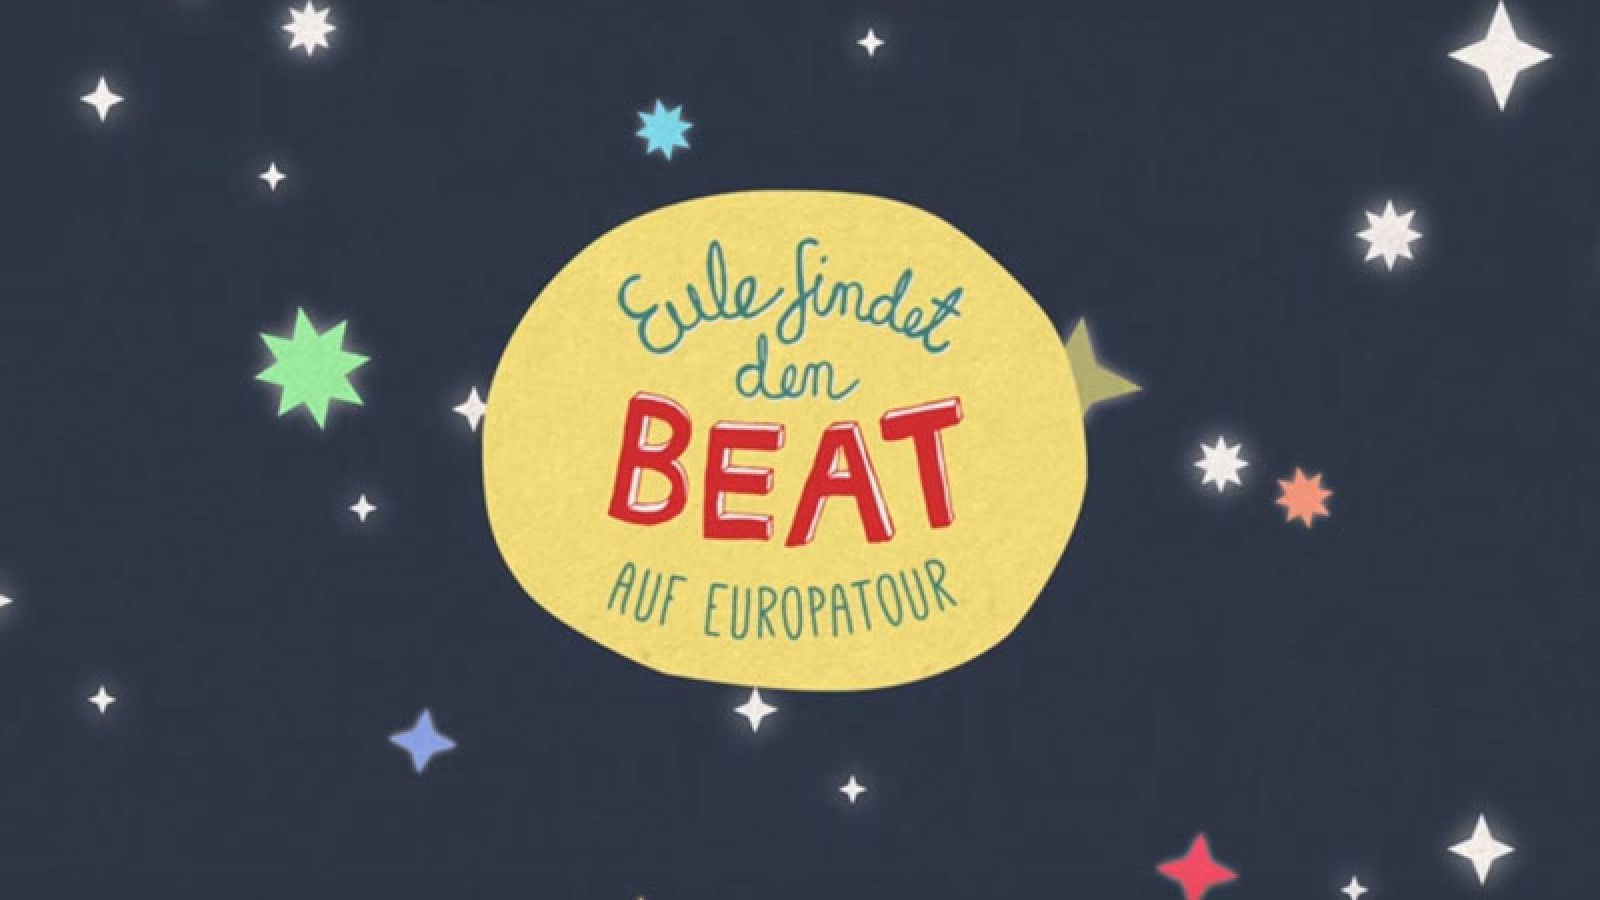 Seht das Medley-Video zum neuen Album Eule findet den Beat – Auf Europatour